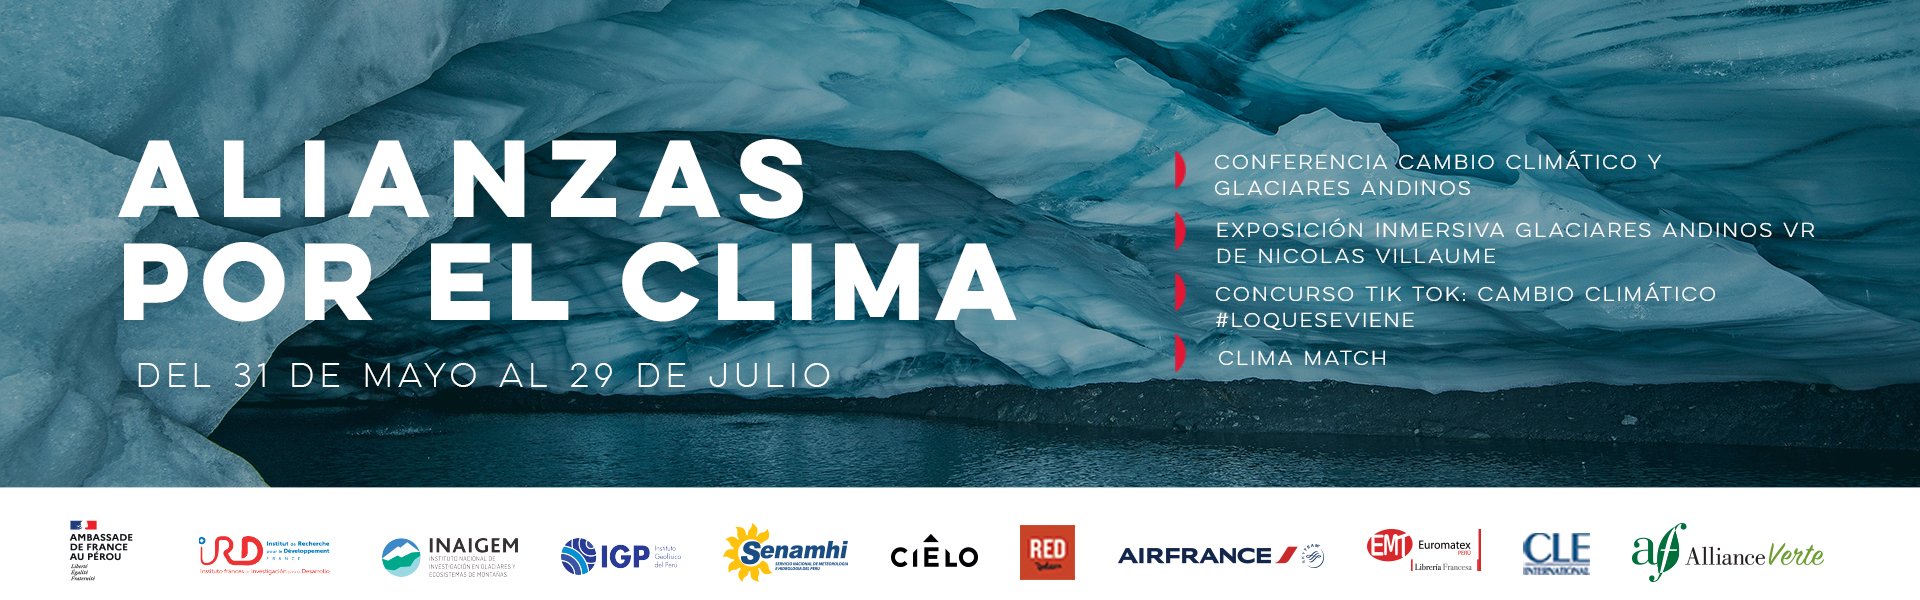 Banner web - Alianzas por el clima